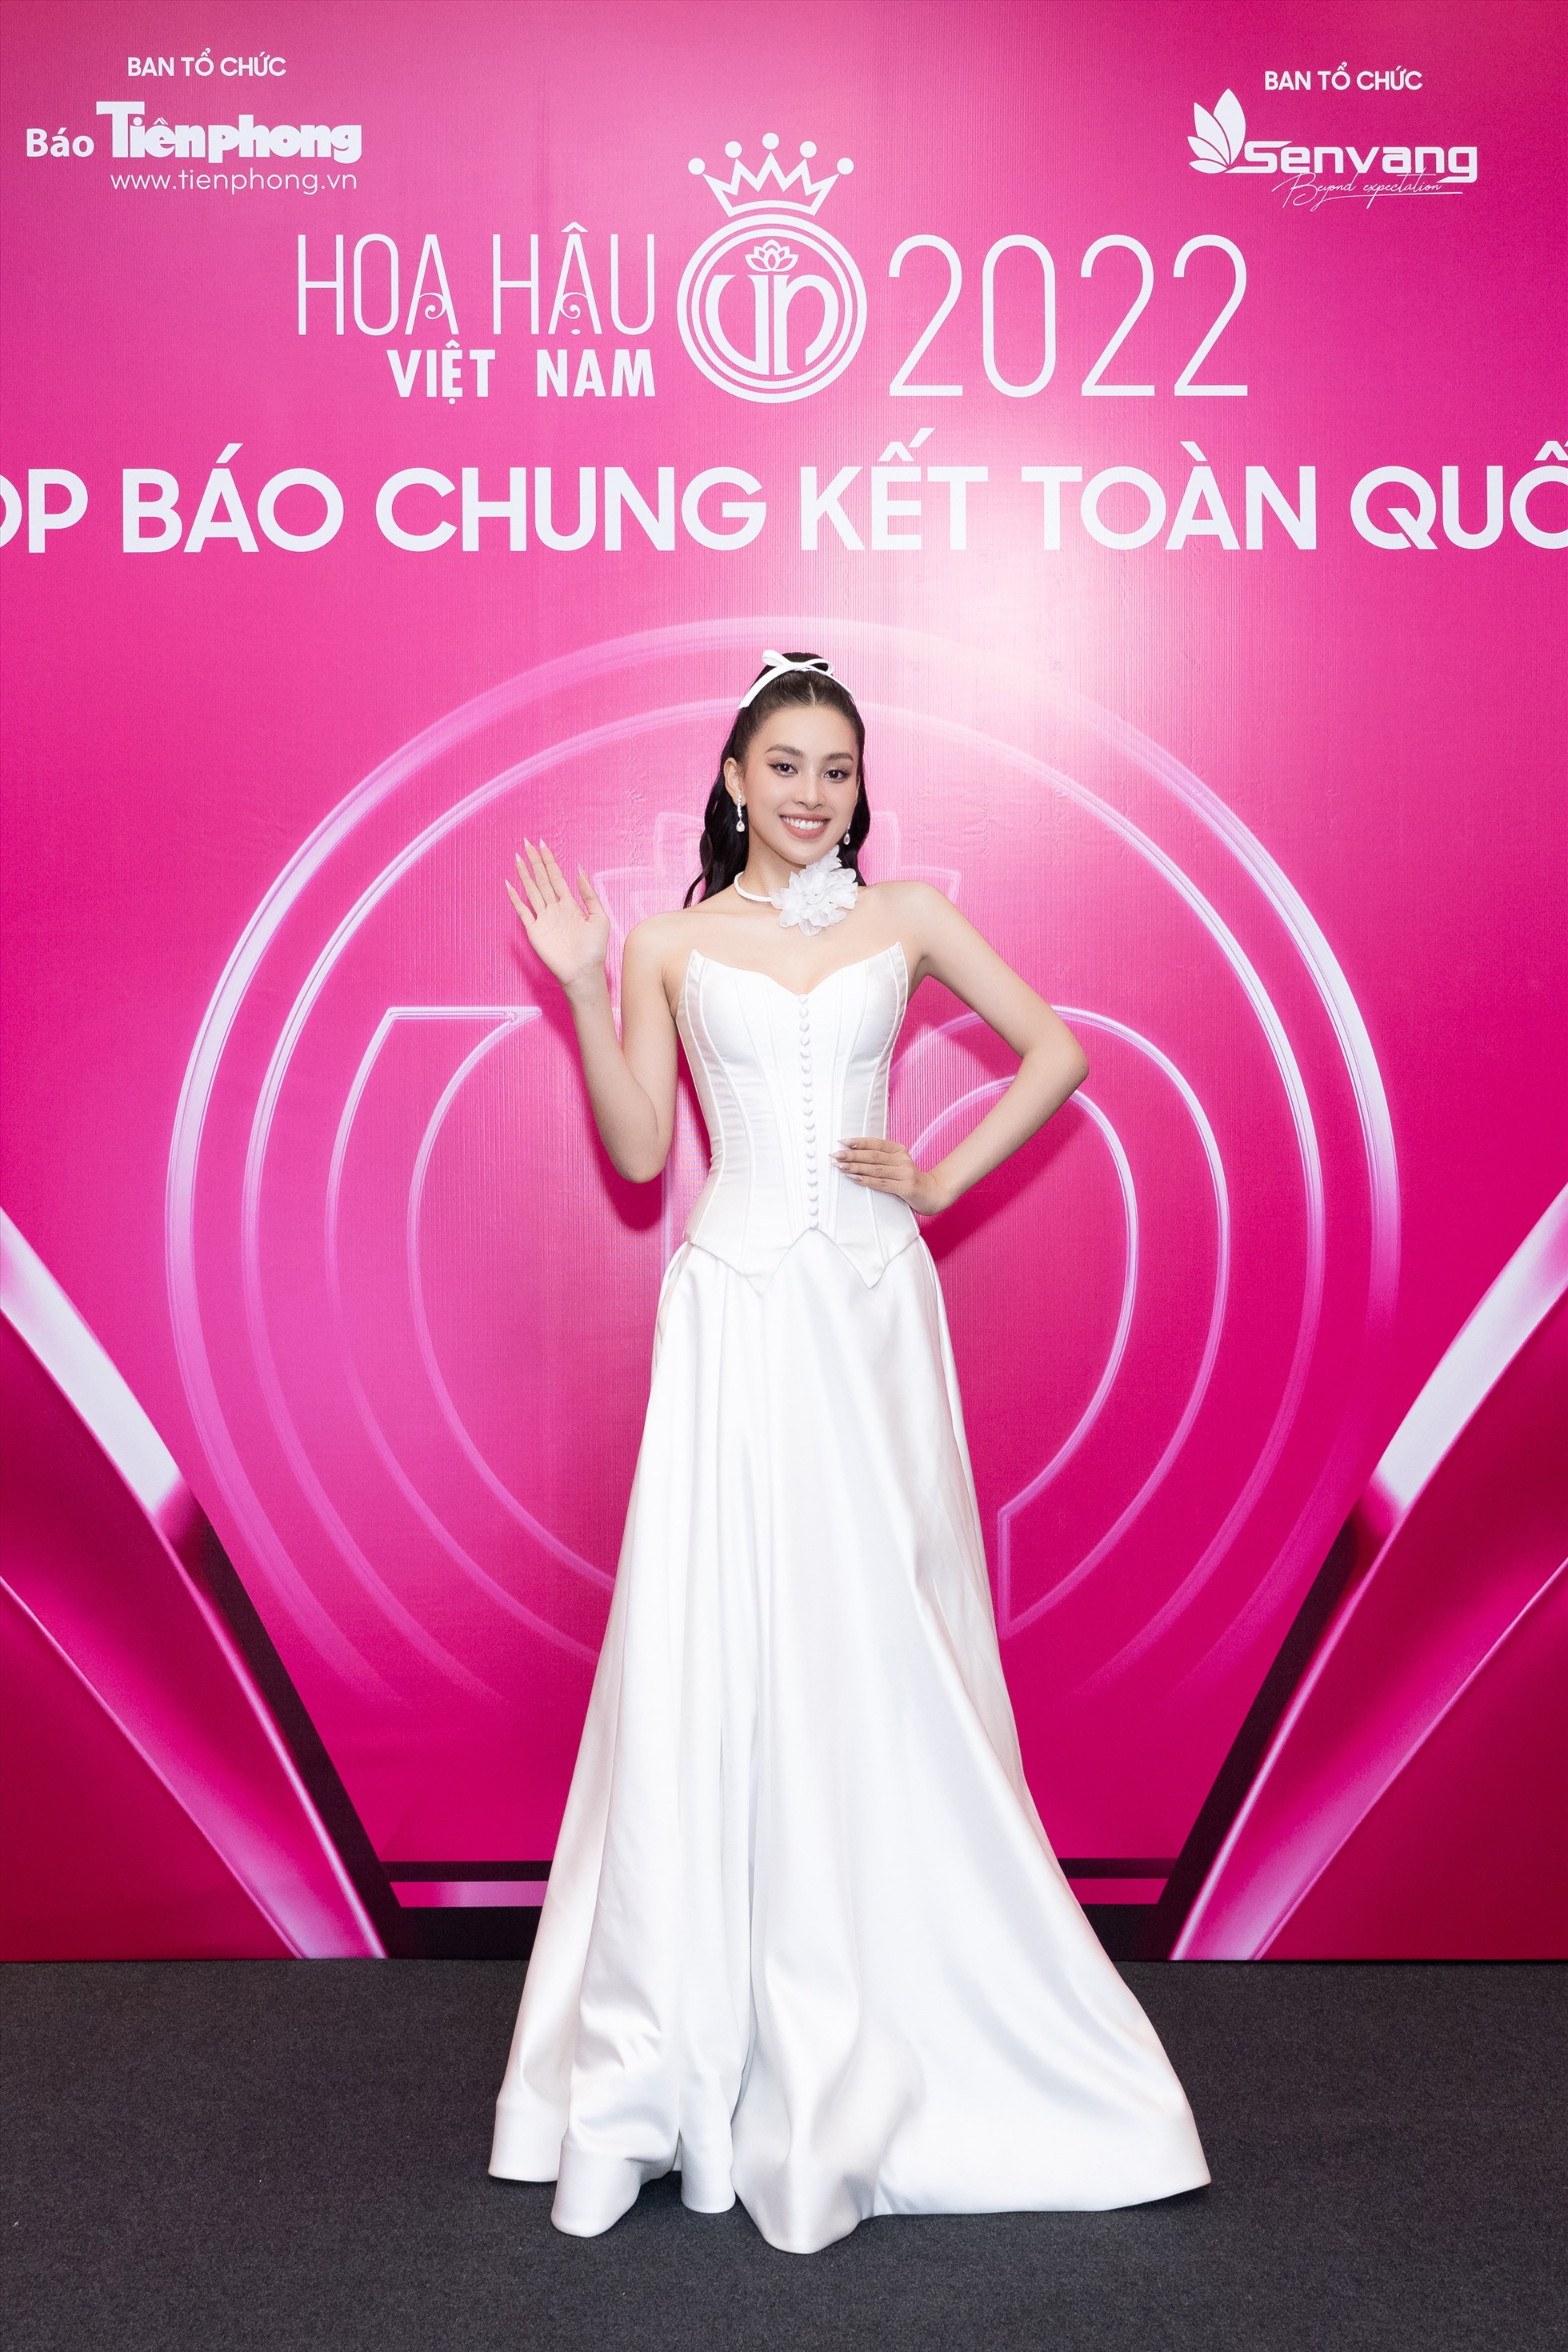 Hoa hậu Lương Thuỳ Linh gây chú ý tại thảm đỏ vòng chung kết với layout makeup xinh đẹp, quyến rũ.